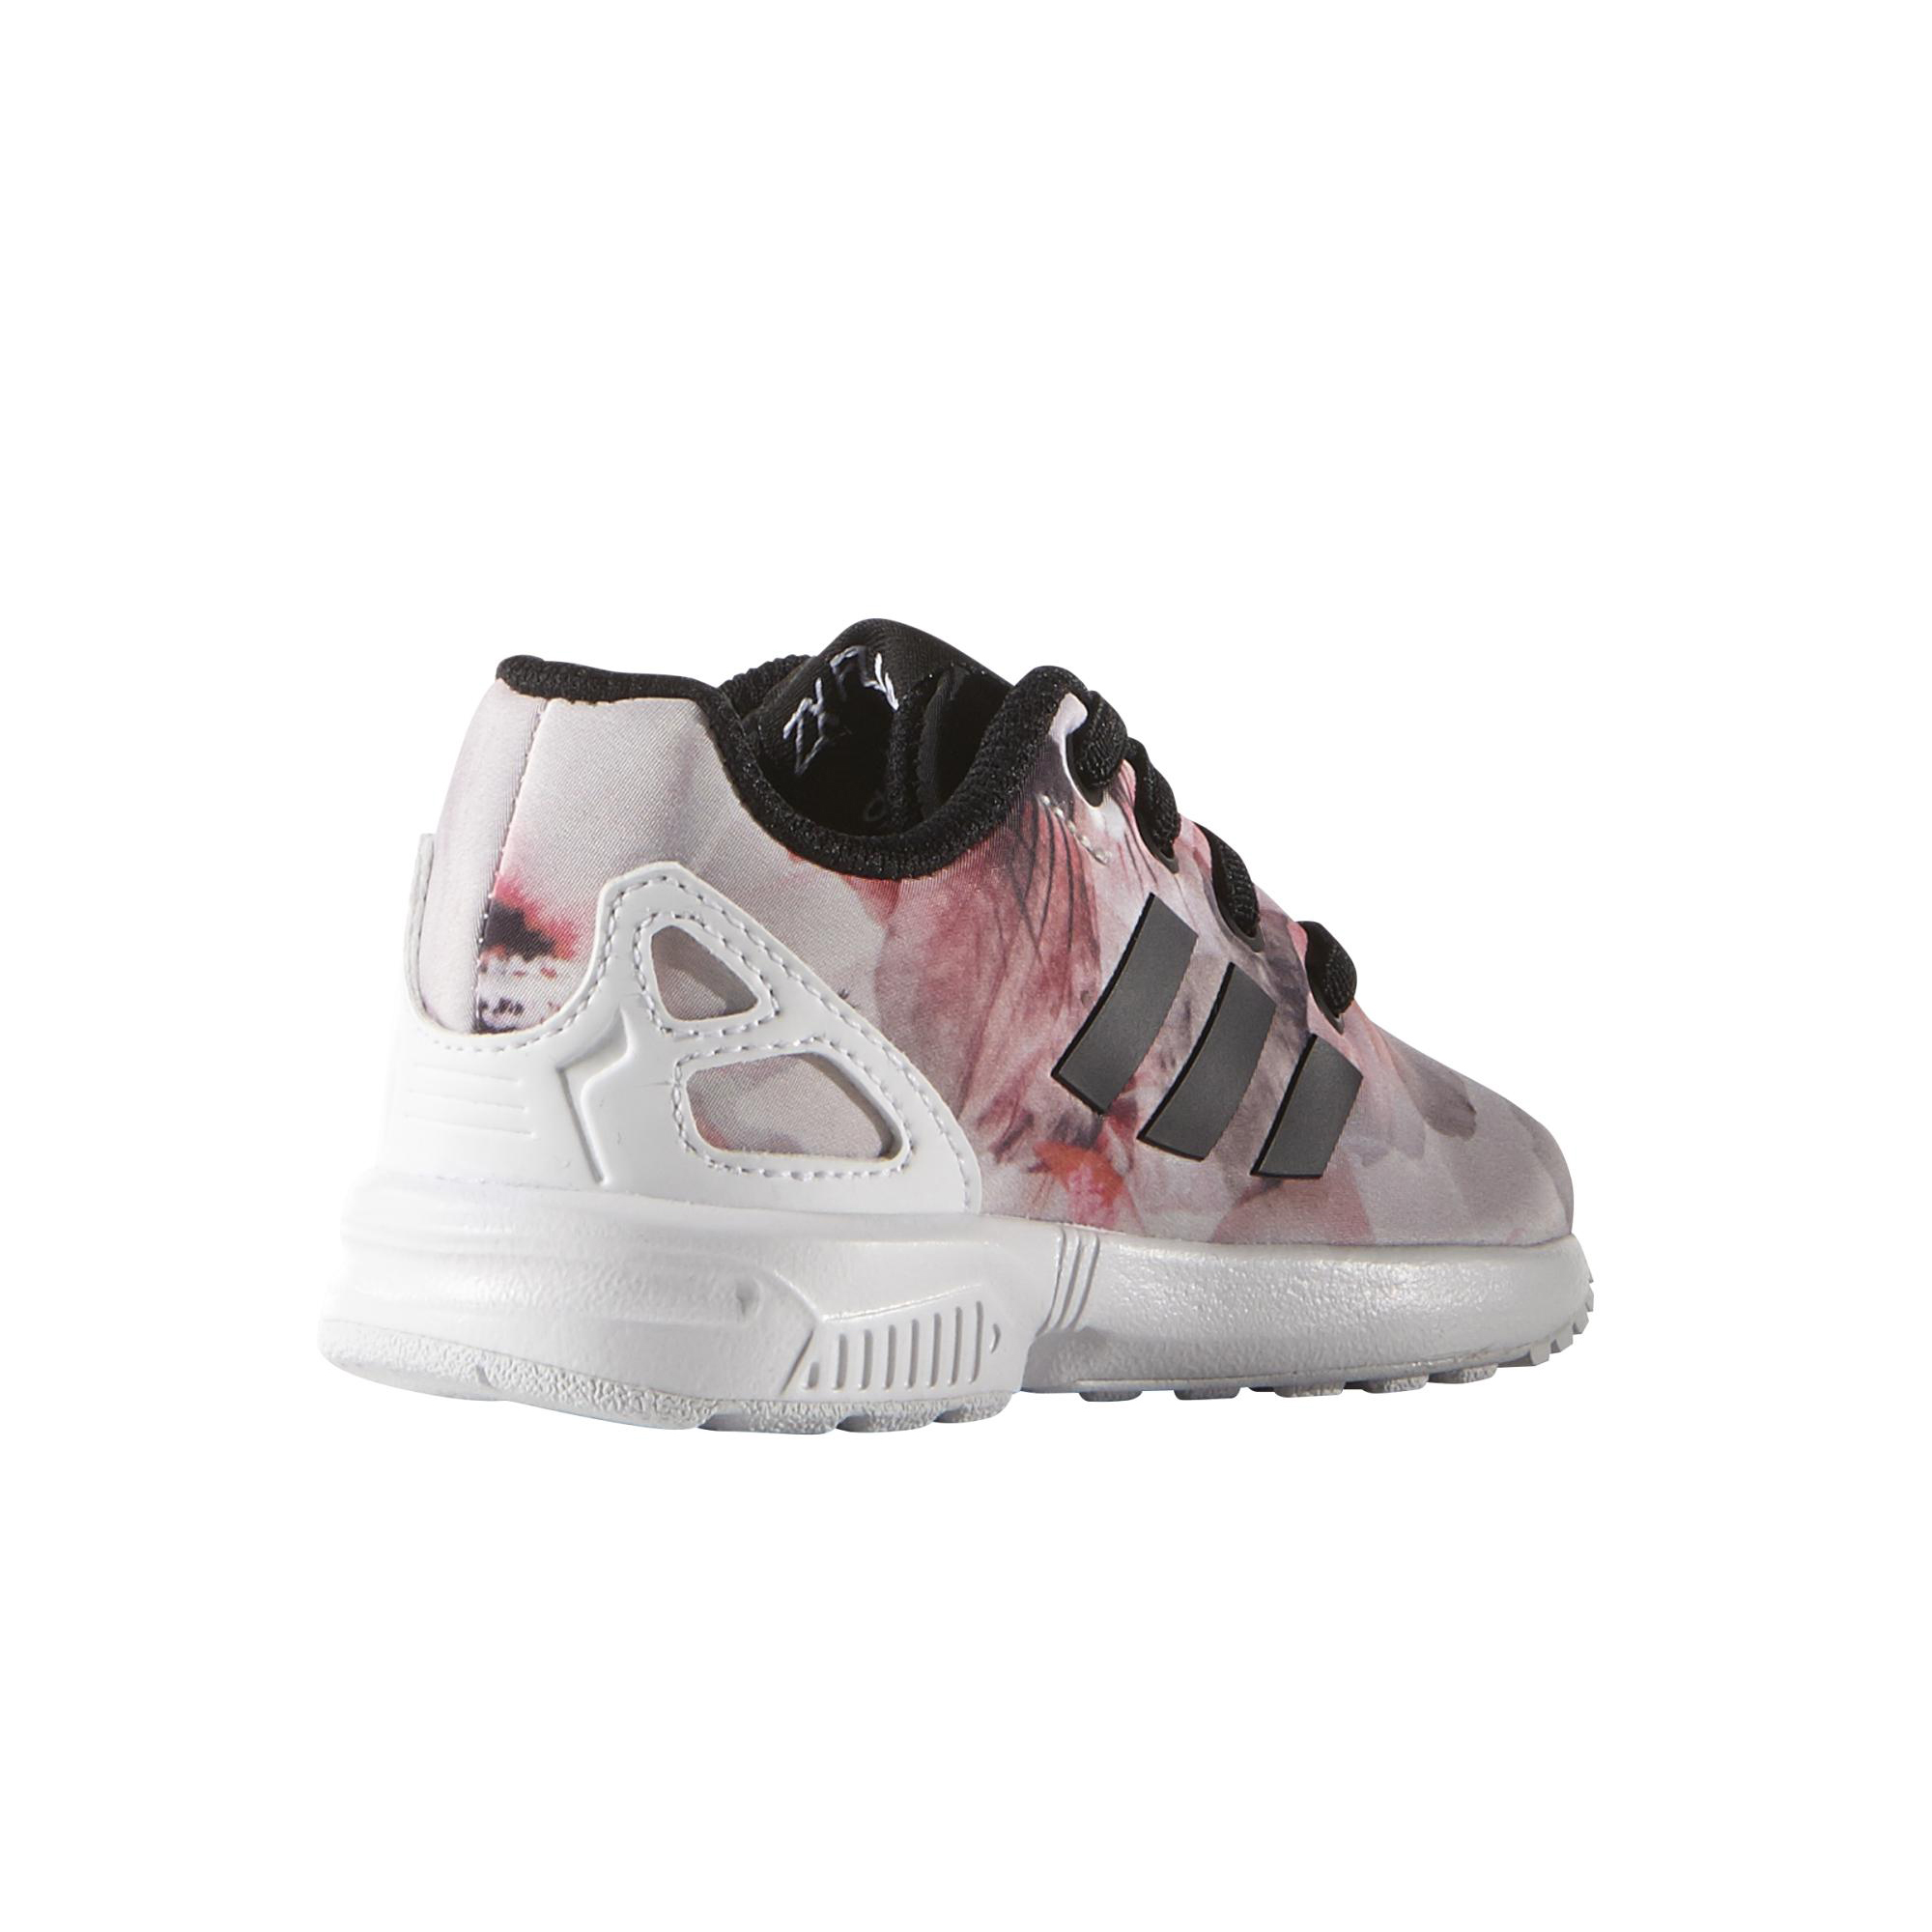 Adidas Originals ZX Flux I (rosa/blanco/negr